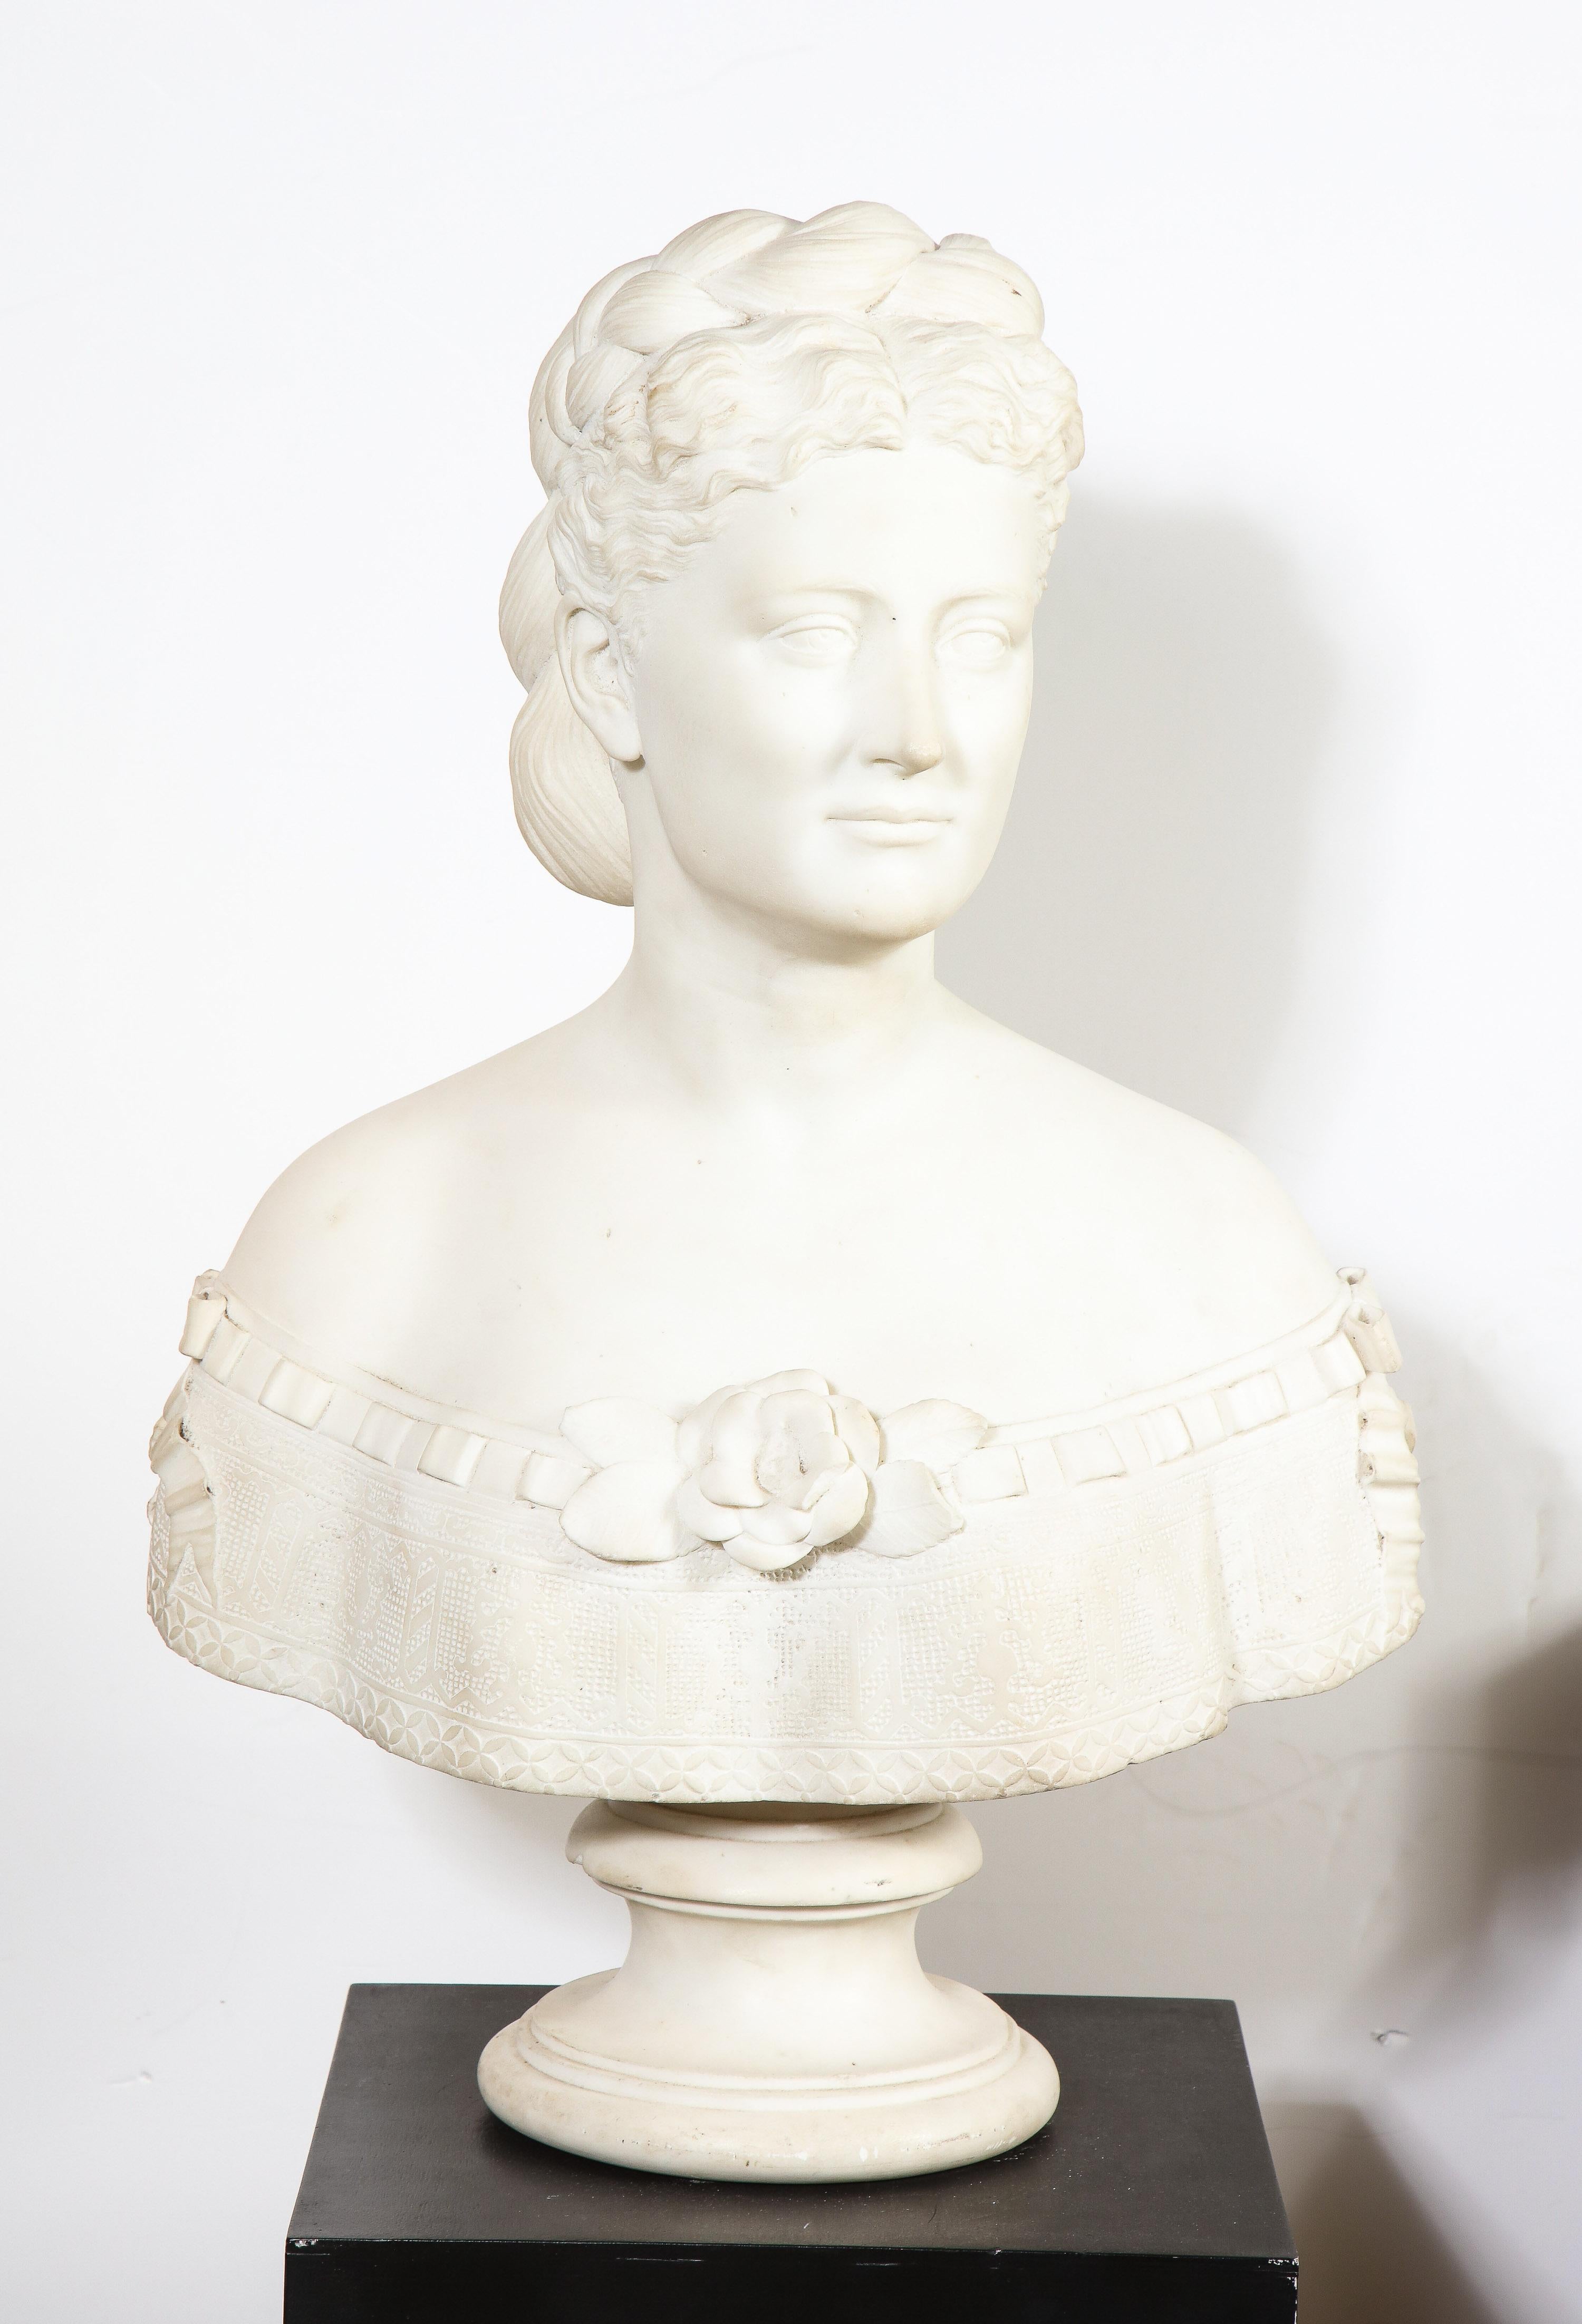 Thomas Ridgeway Gould (1818–1881): äußerst rare amerikanische Büste einer Frau aus weißem Marmor, um 1870.

Darstellung einer schönen Frau mit doppelreihigem, zu einem Dutt geflochtenem Haar. Sehr gute Qualität, ein Meisterwerk,